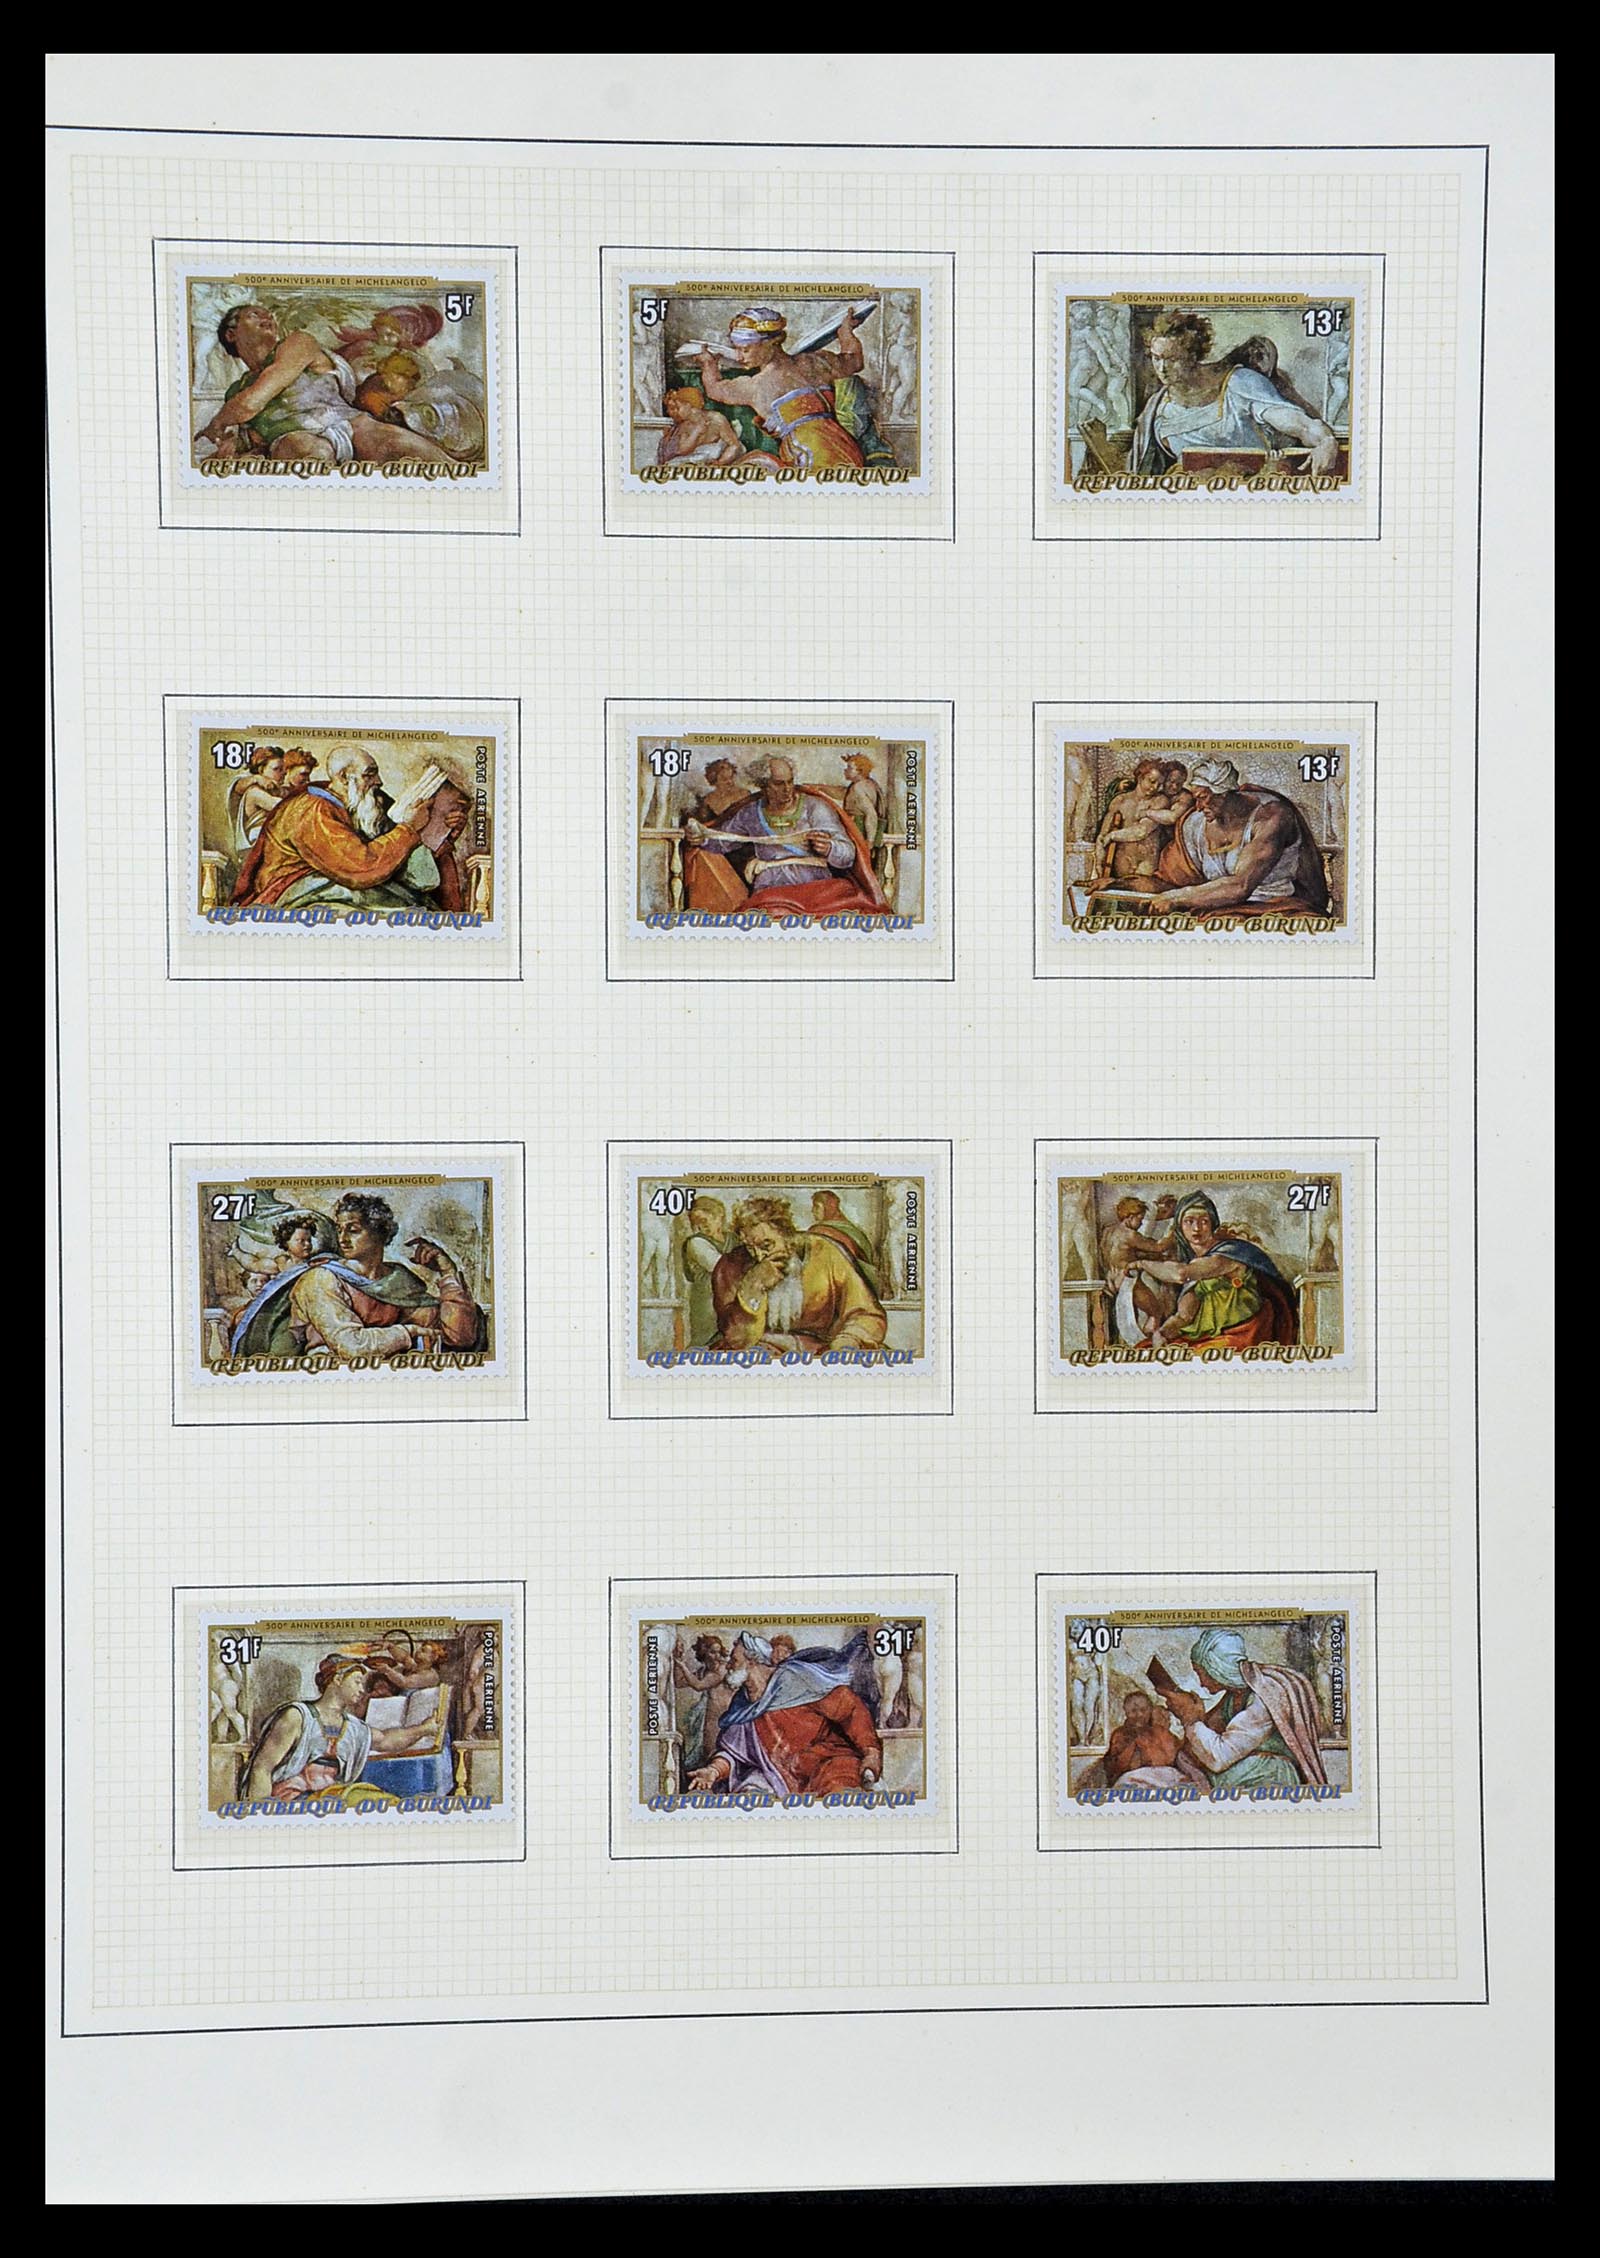 34946 087 - Stamp Collection 34946 Motief Kunst en Religie.